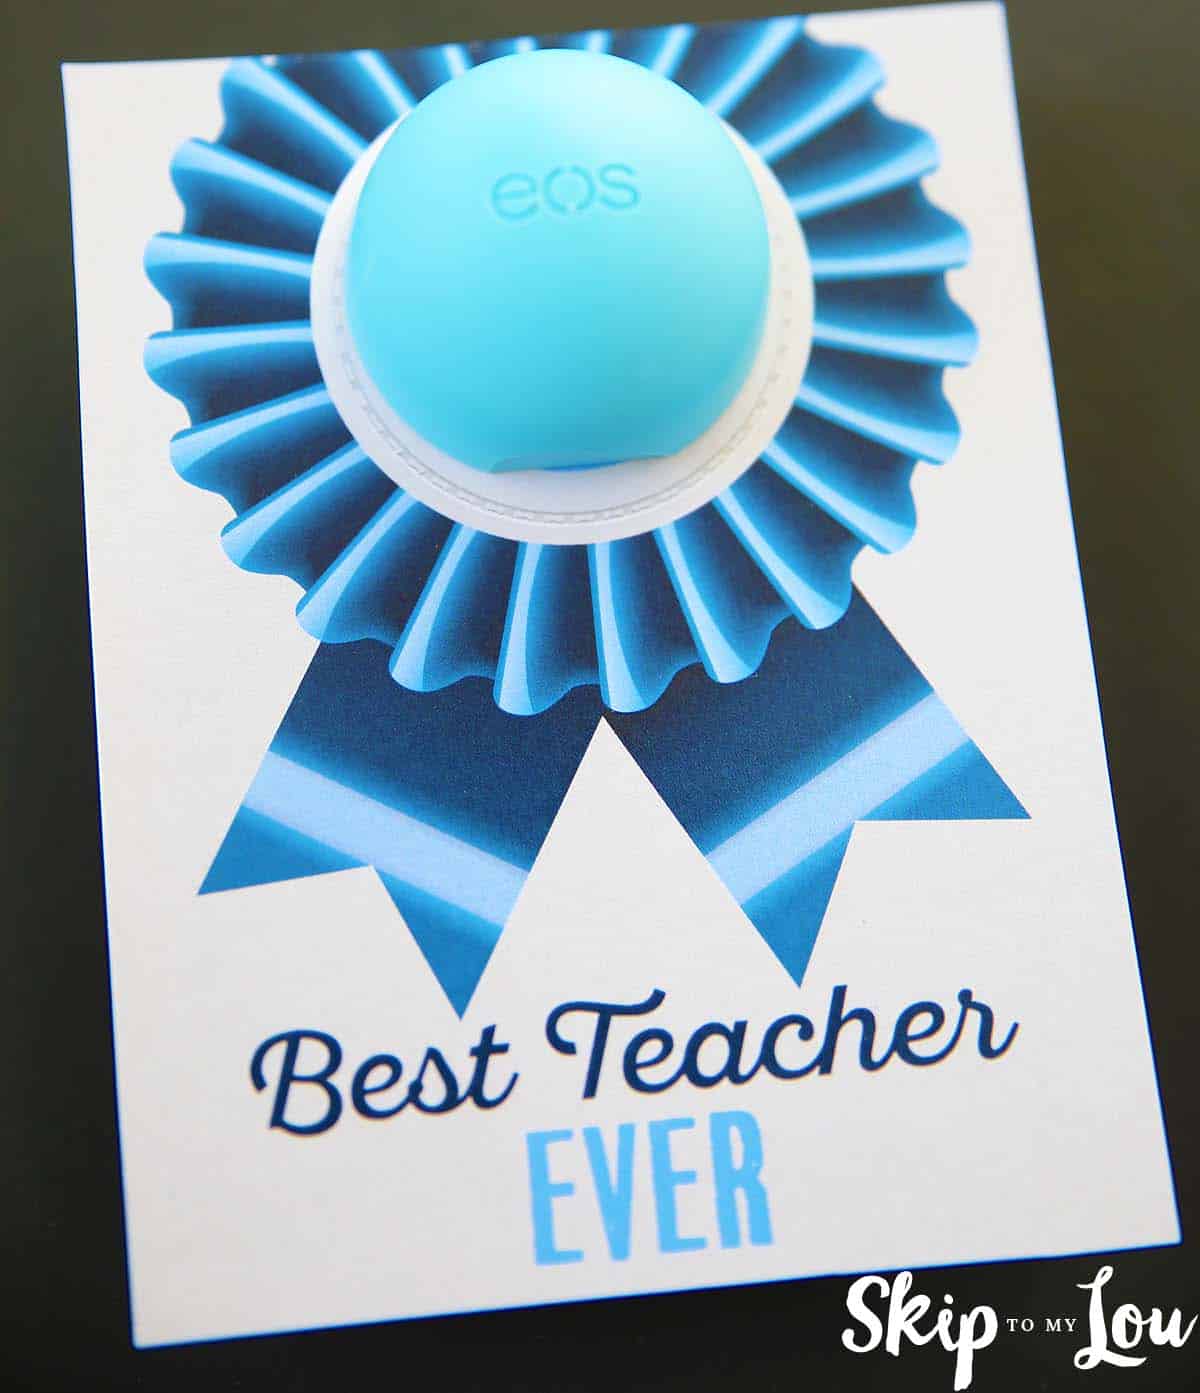 Best-teacher-ever-EOS-lip-balm-gift